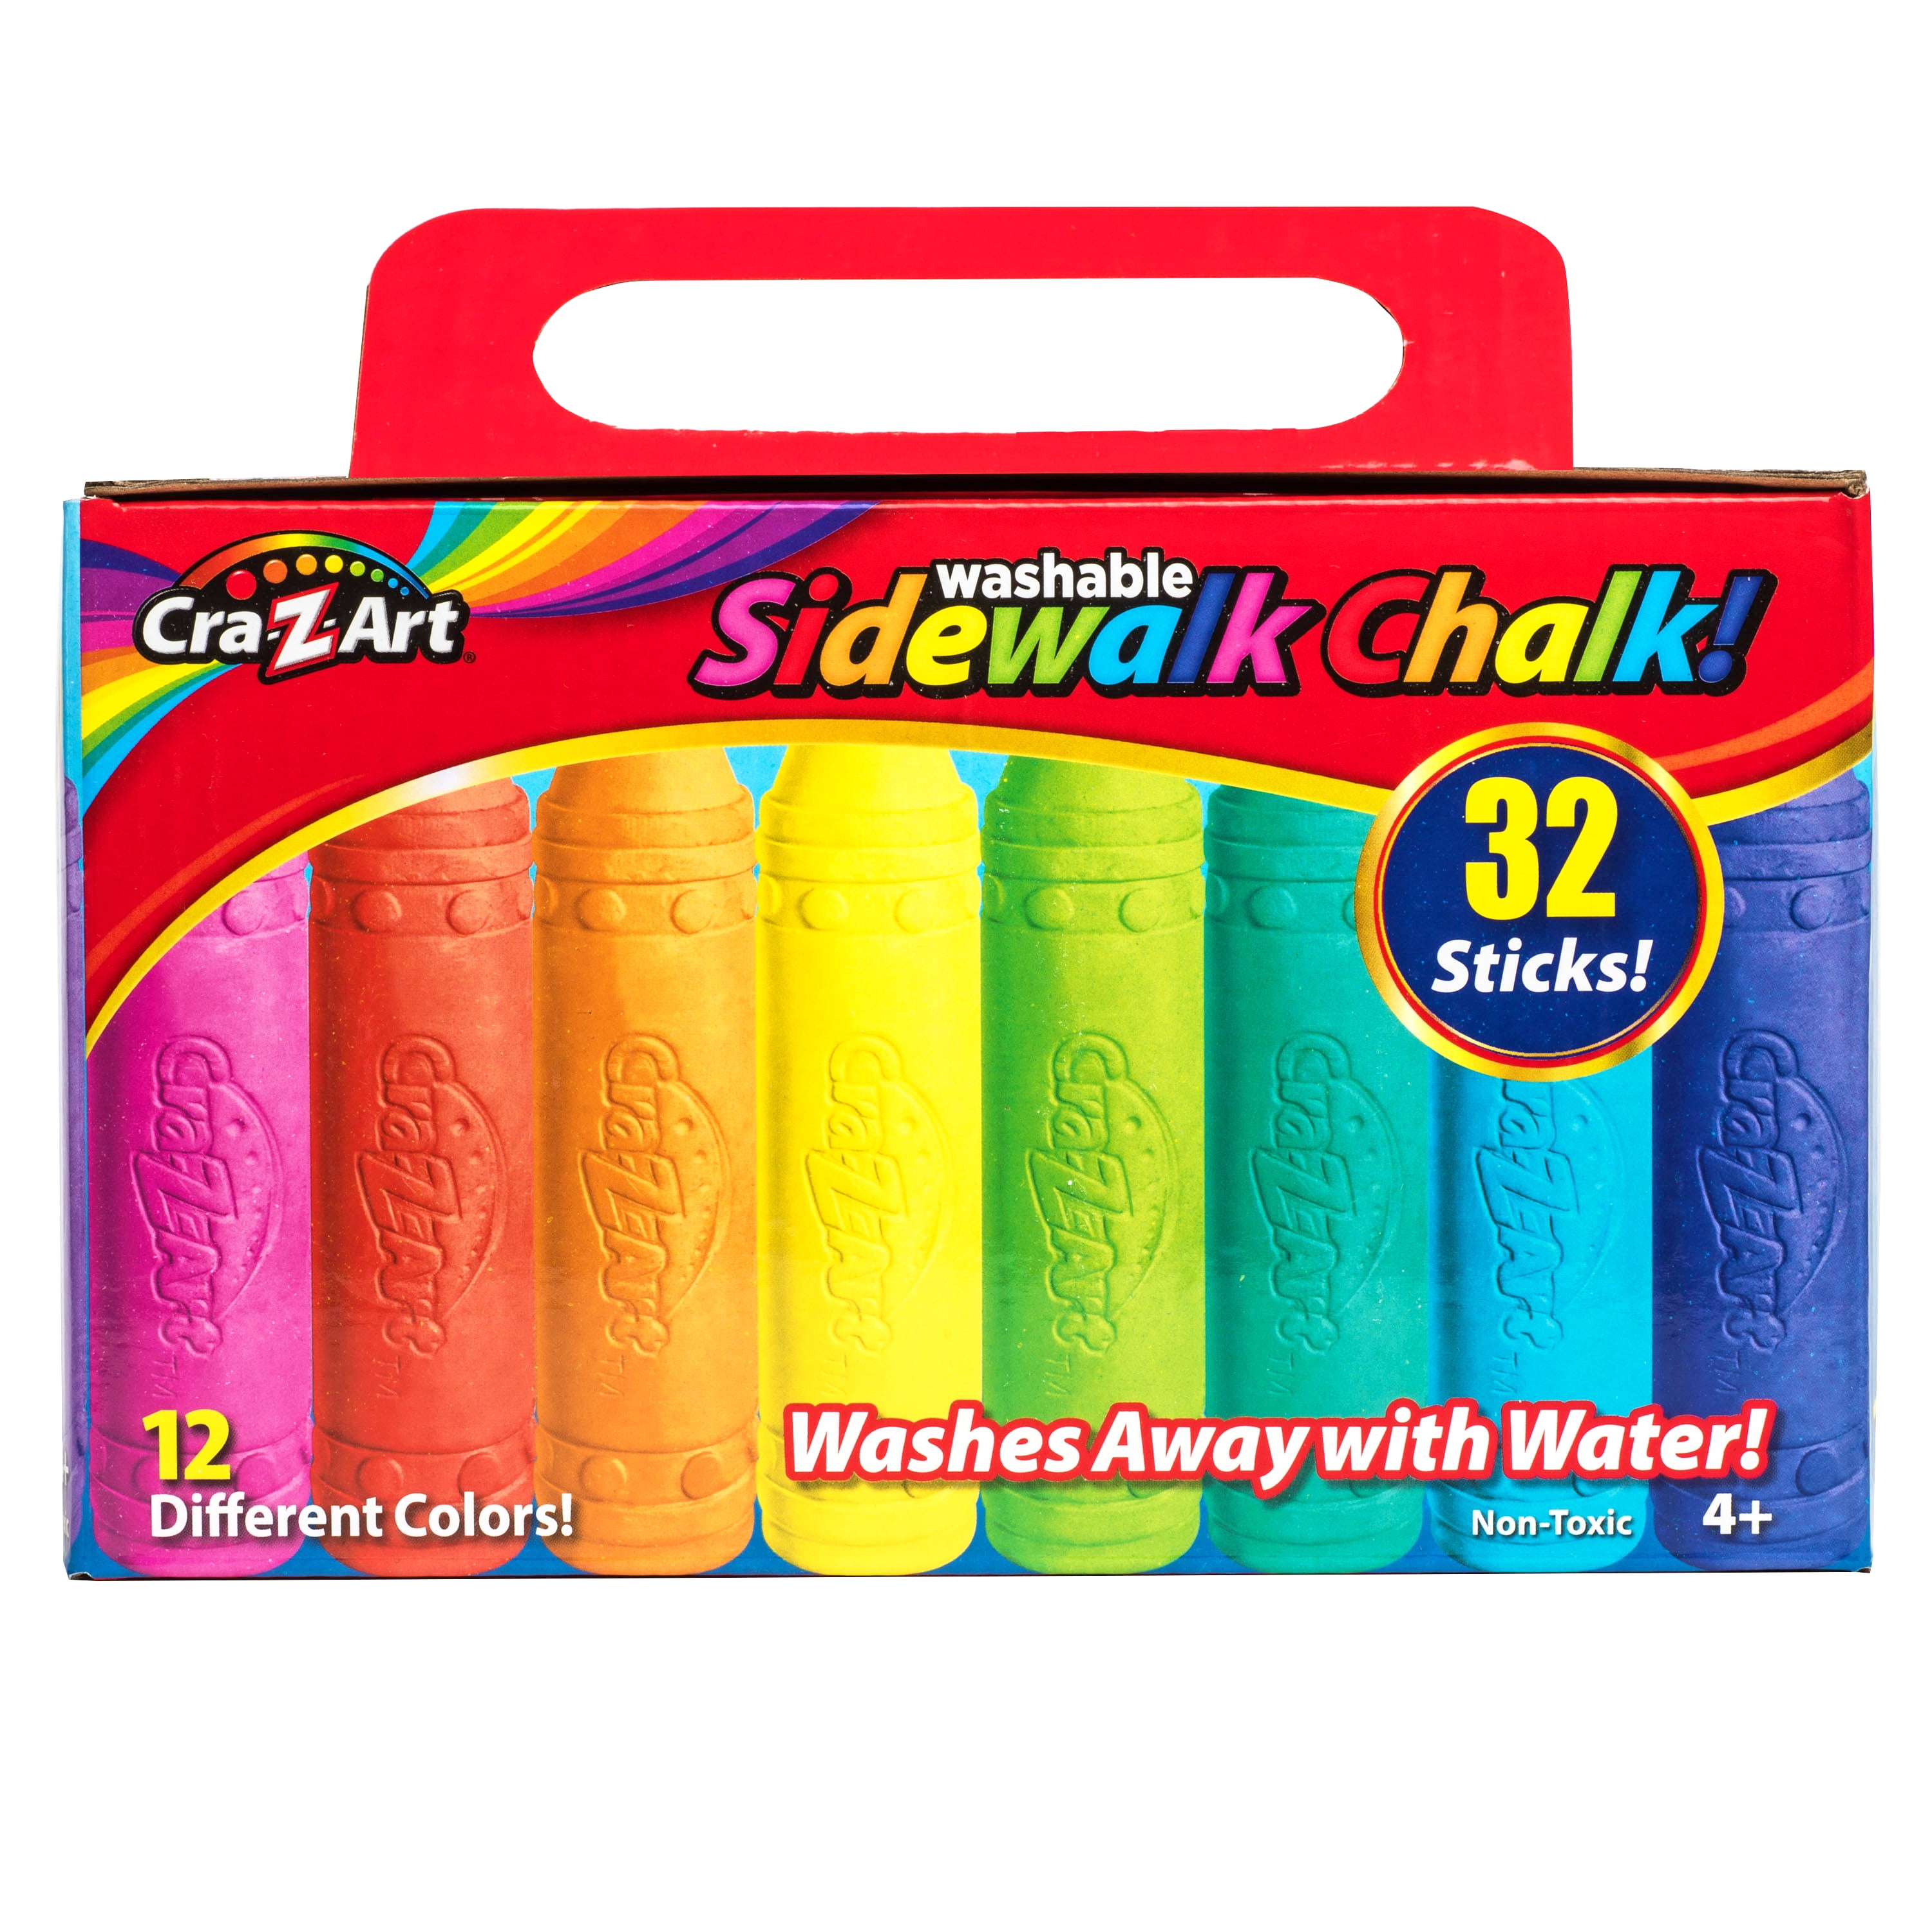 Cra-Z-Art 32Ct Sidewalk Chalk